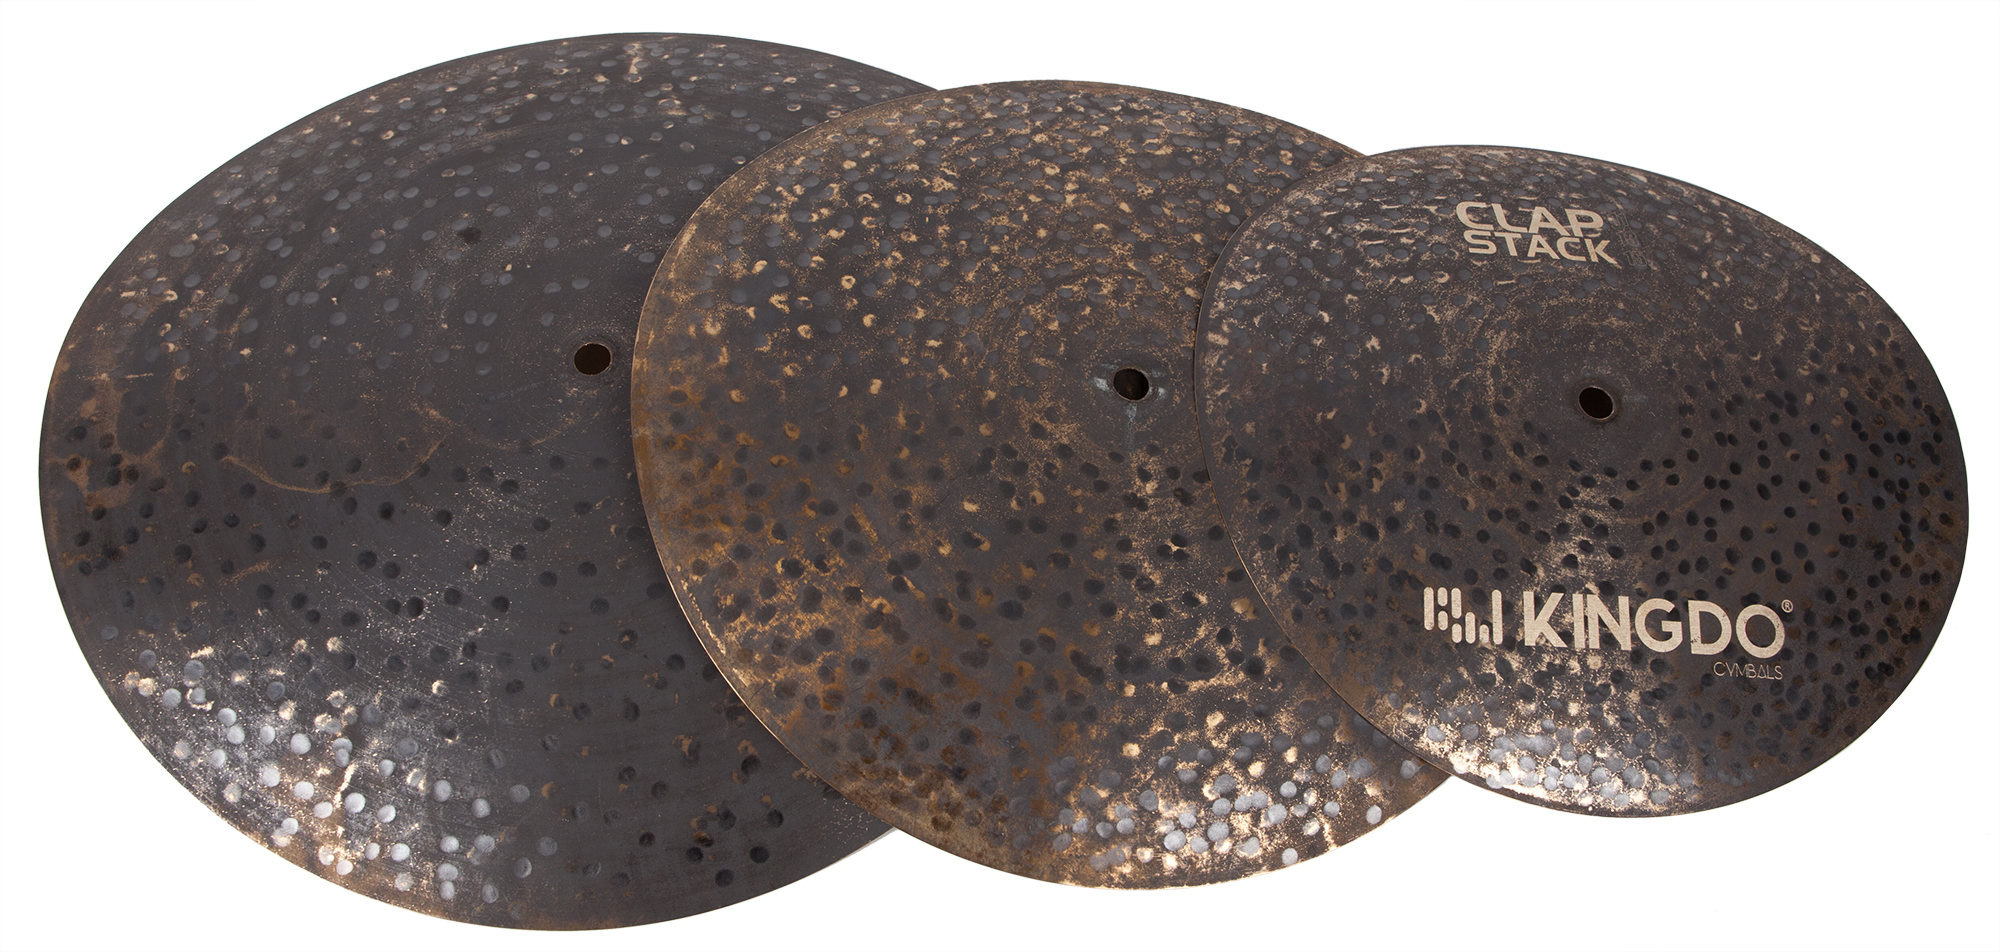 Тарелки, барабаны для ударных установок KINGDO CLAP STACK CYMBAL тарелки барабаны для ударных установок aisen b20 hybrid cymbal pack